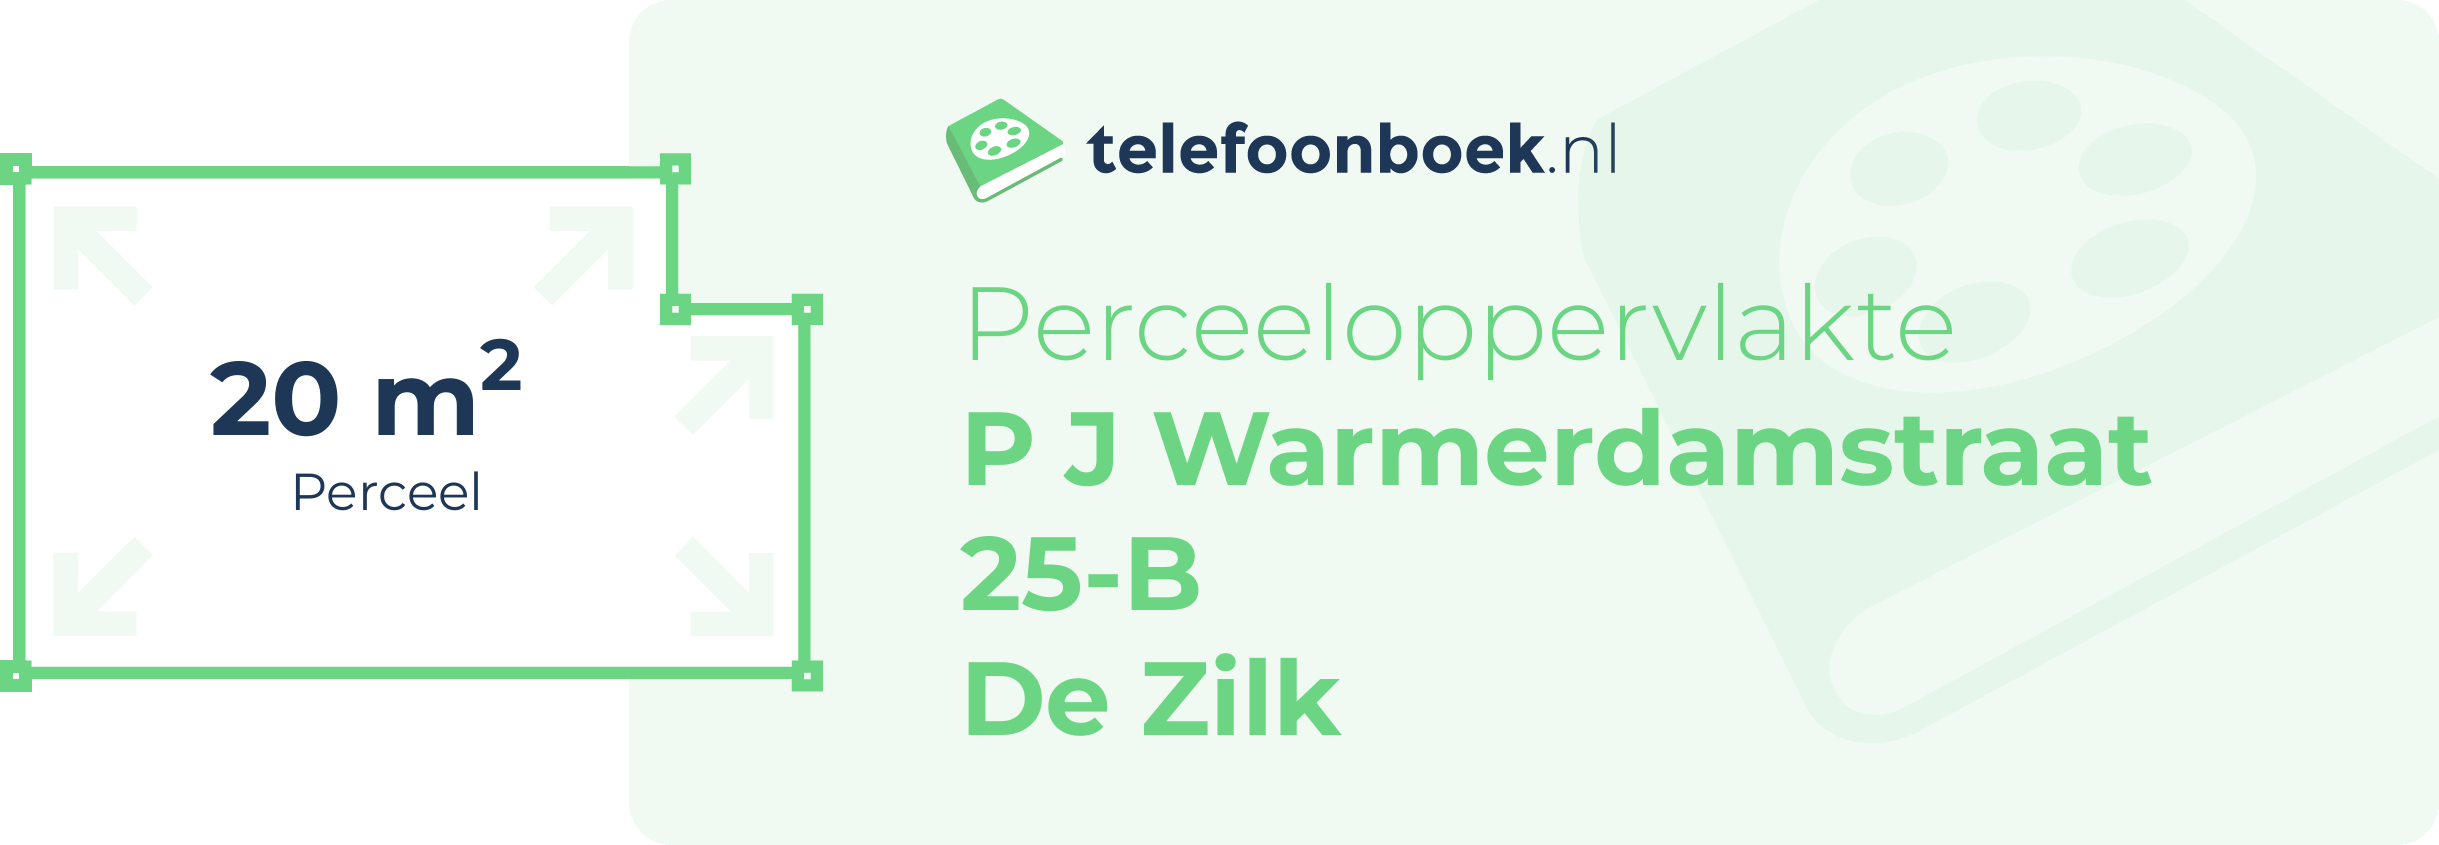 Perceeloppervlakte P J Warmerdamstraat 25-B De Zilk